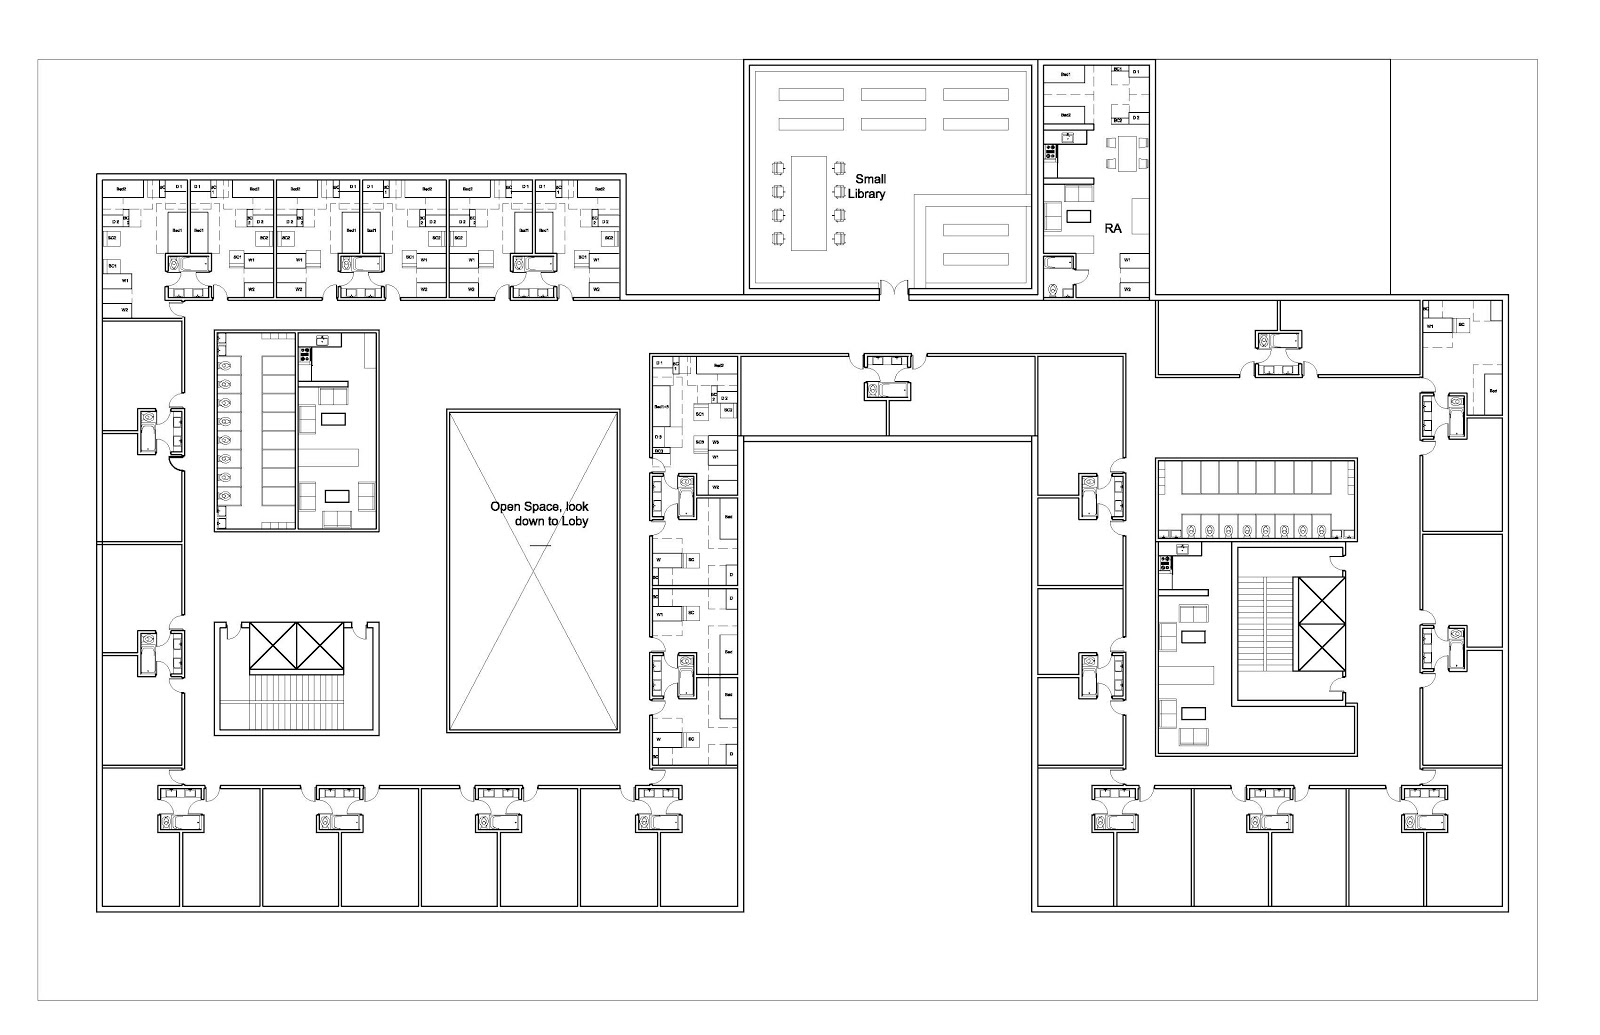 ARCH3611F12TrungNguyen Floor Plan process